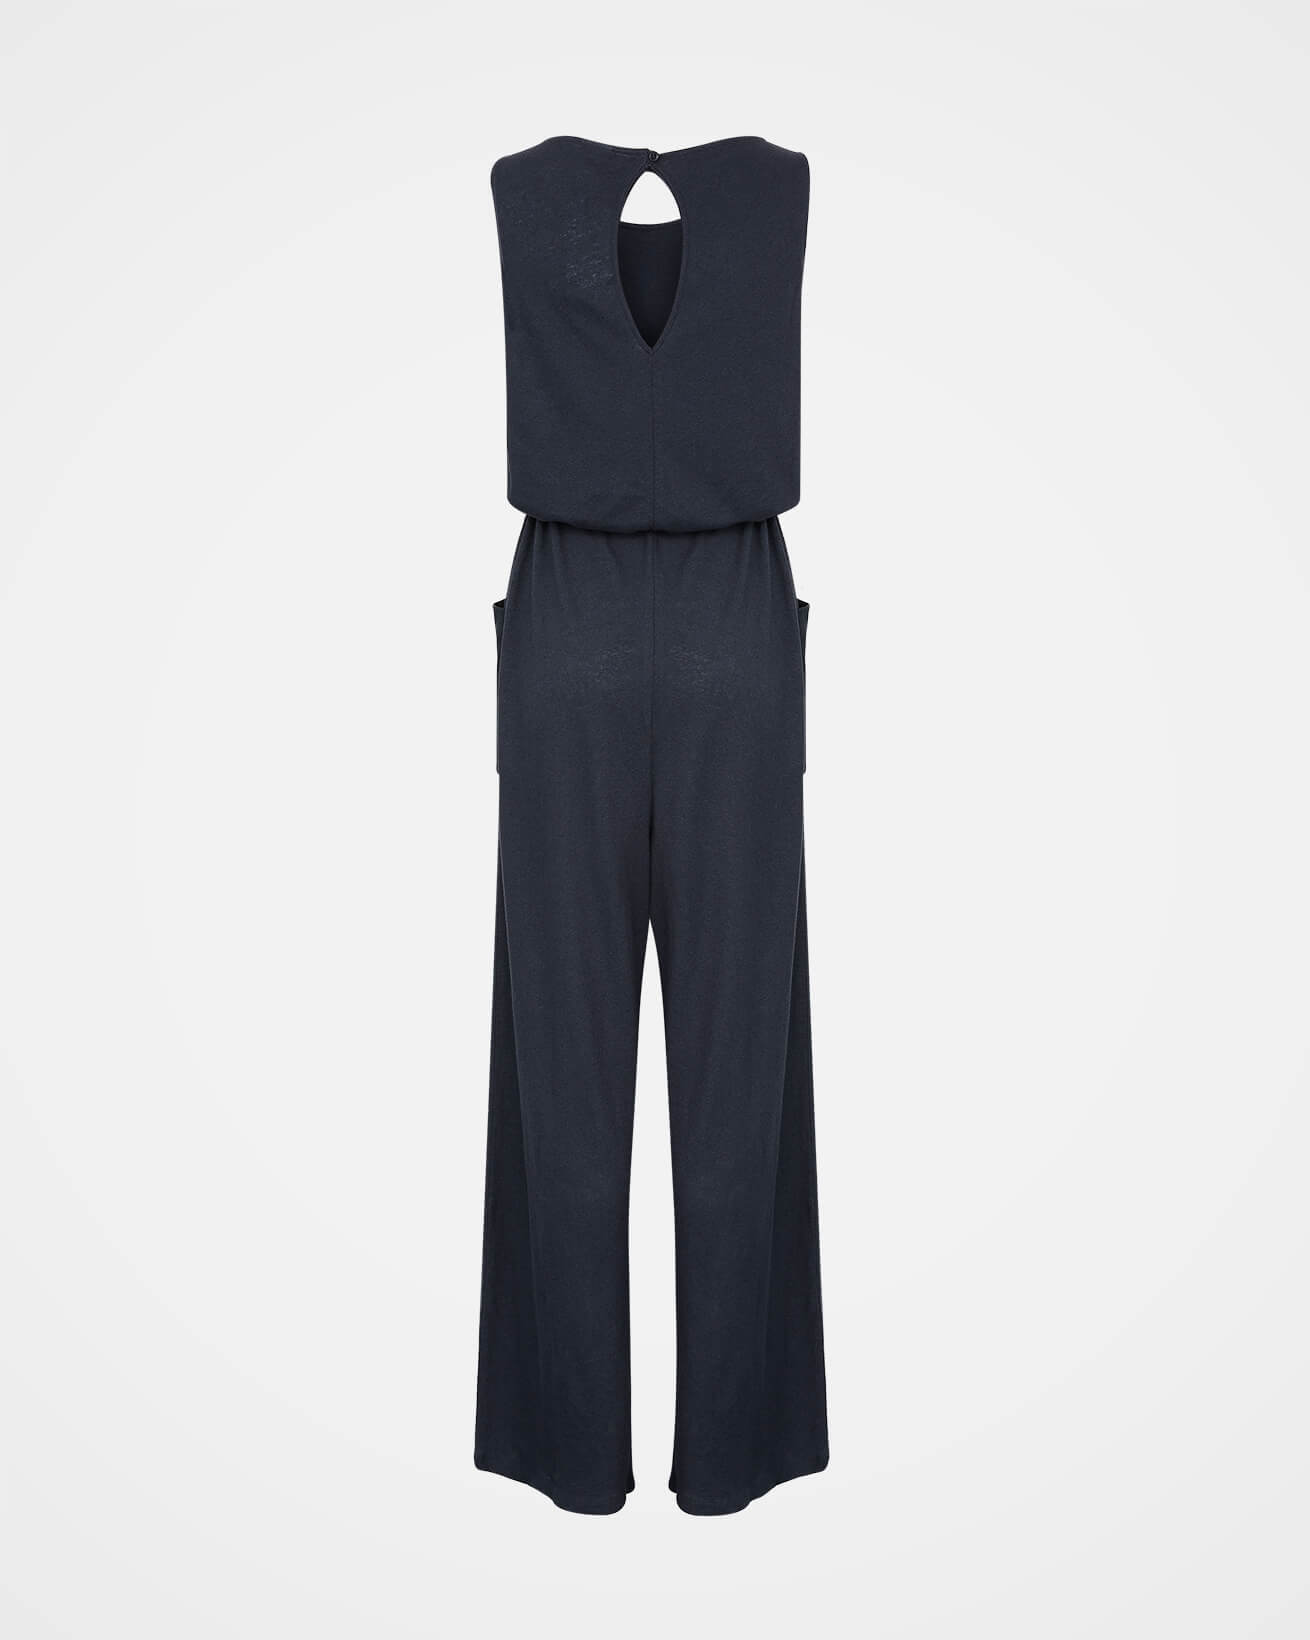 Linen/Cotton Sleeveless Jumpsuit